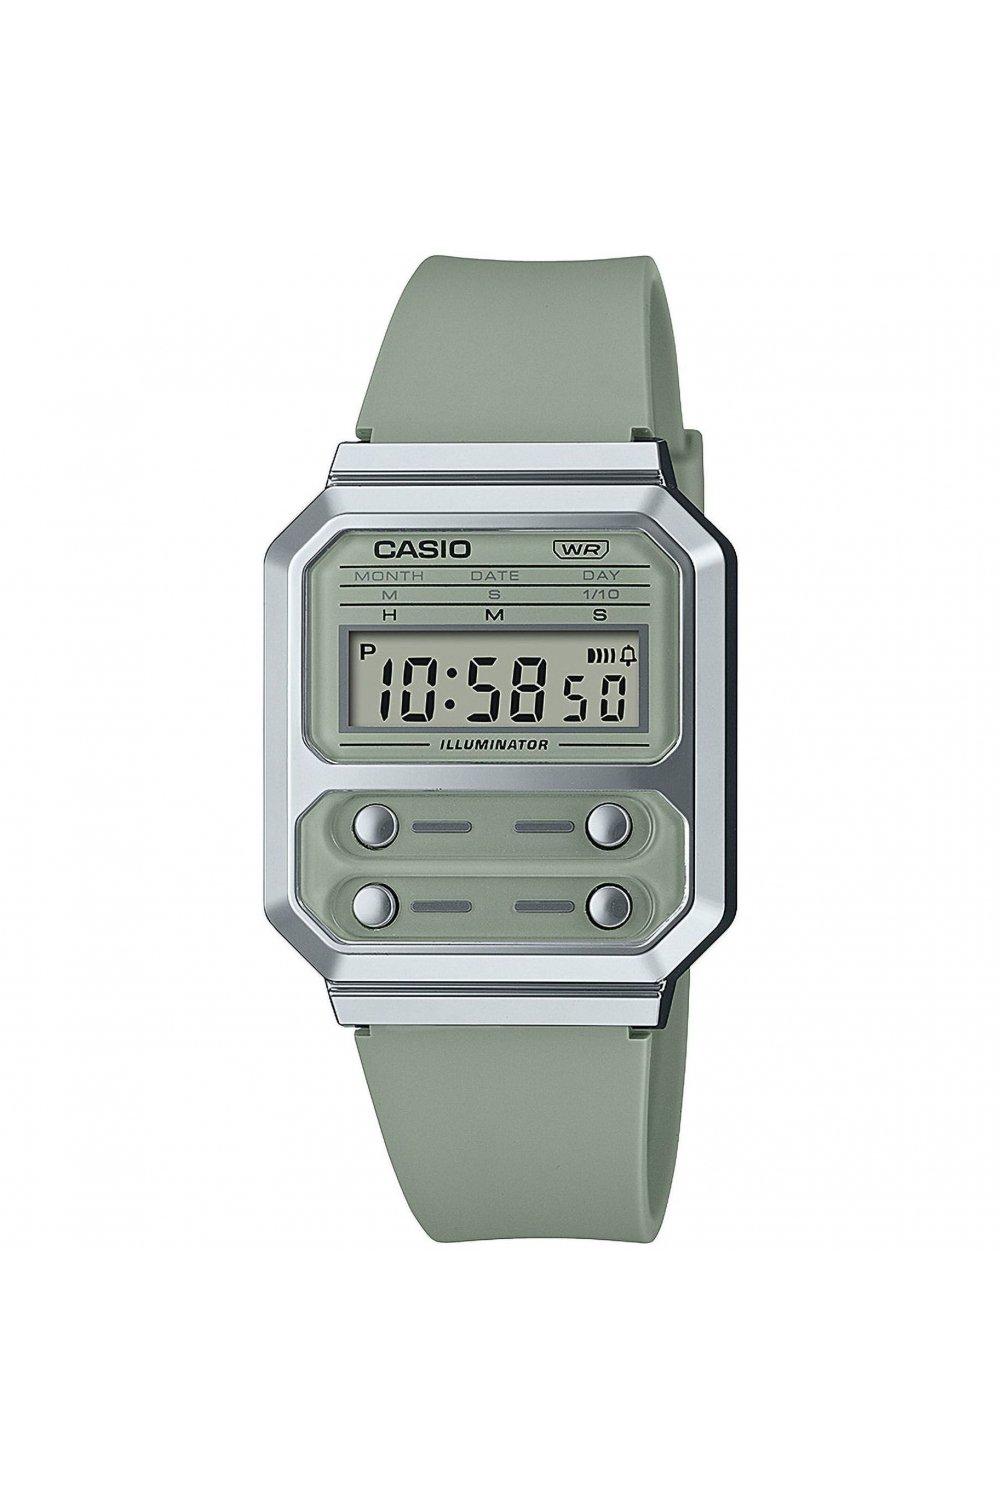 A100 Vintage Plastic/resin Classic Digital Watch - A100Wef-3Aef